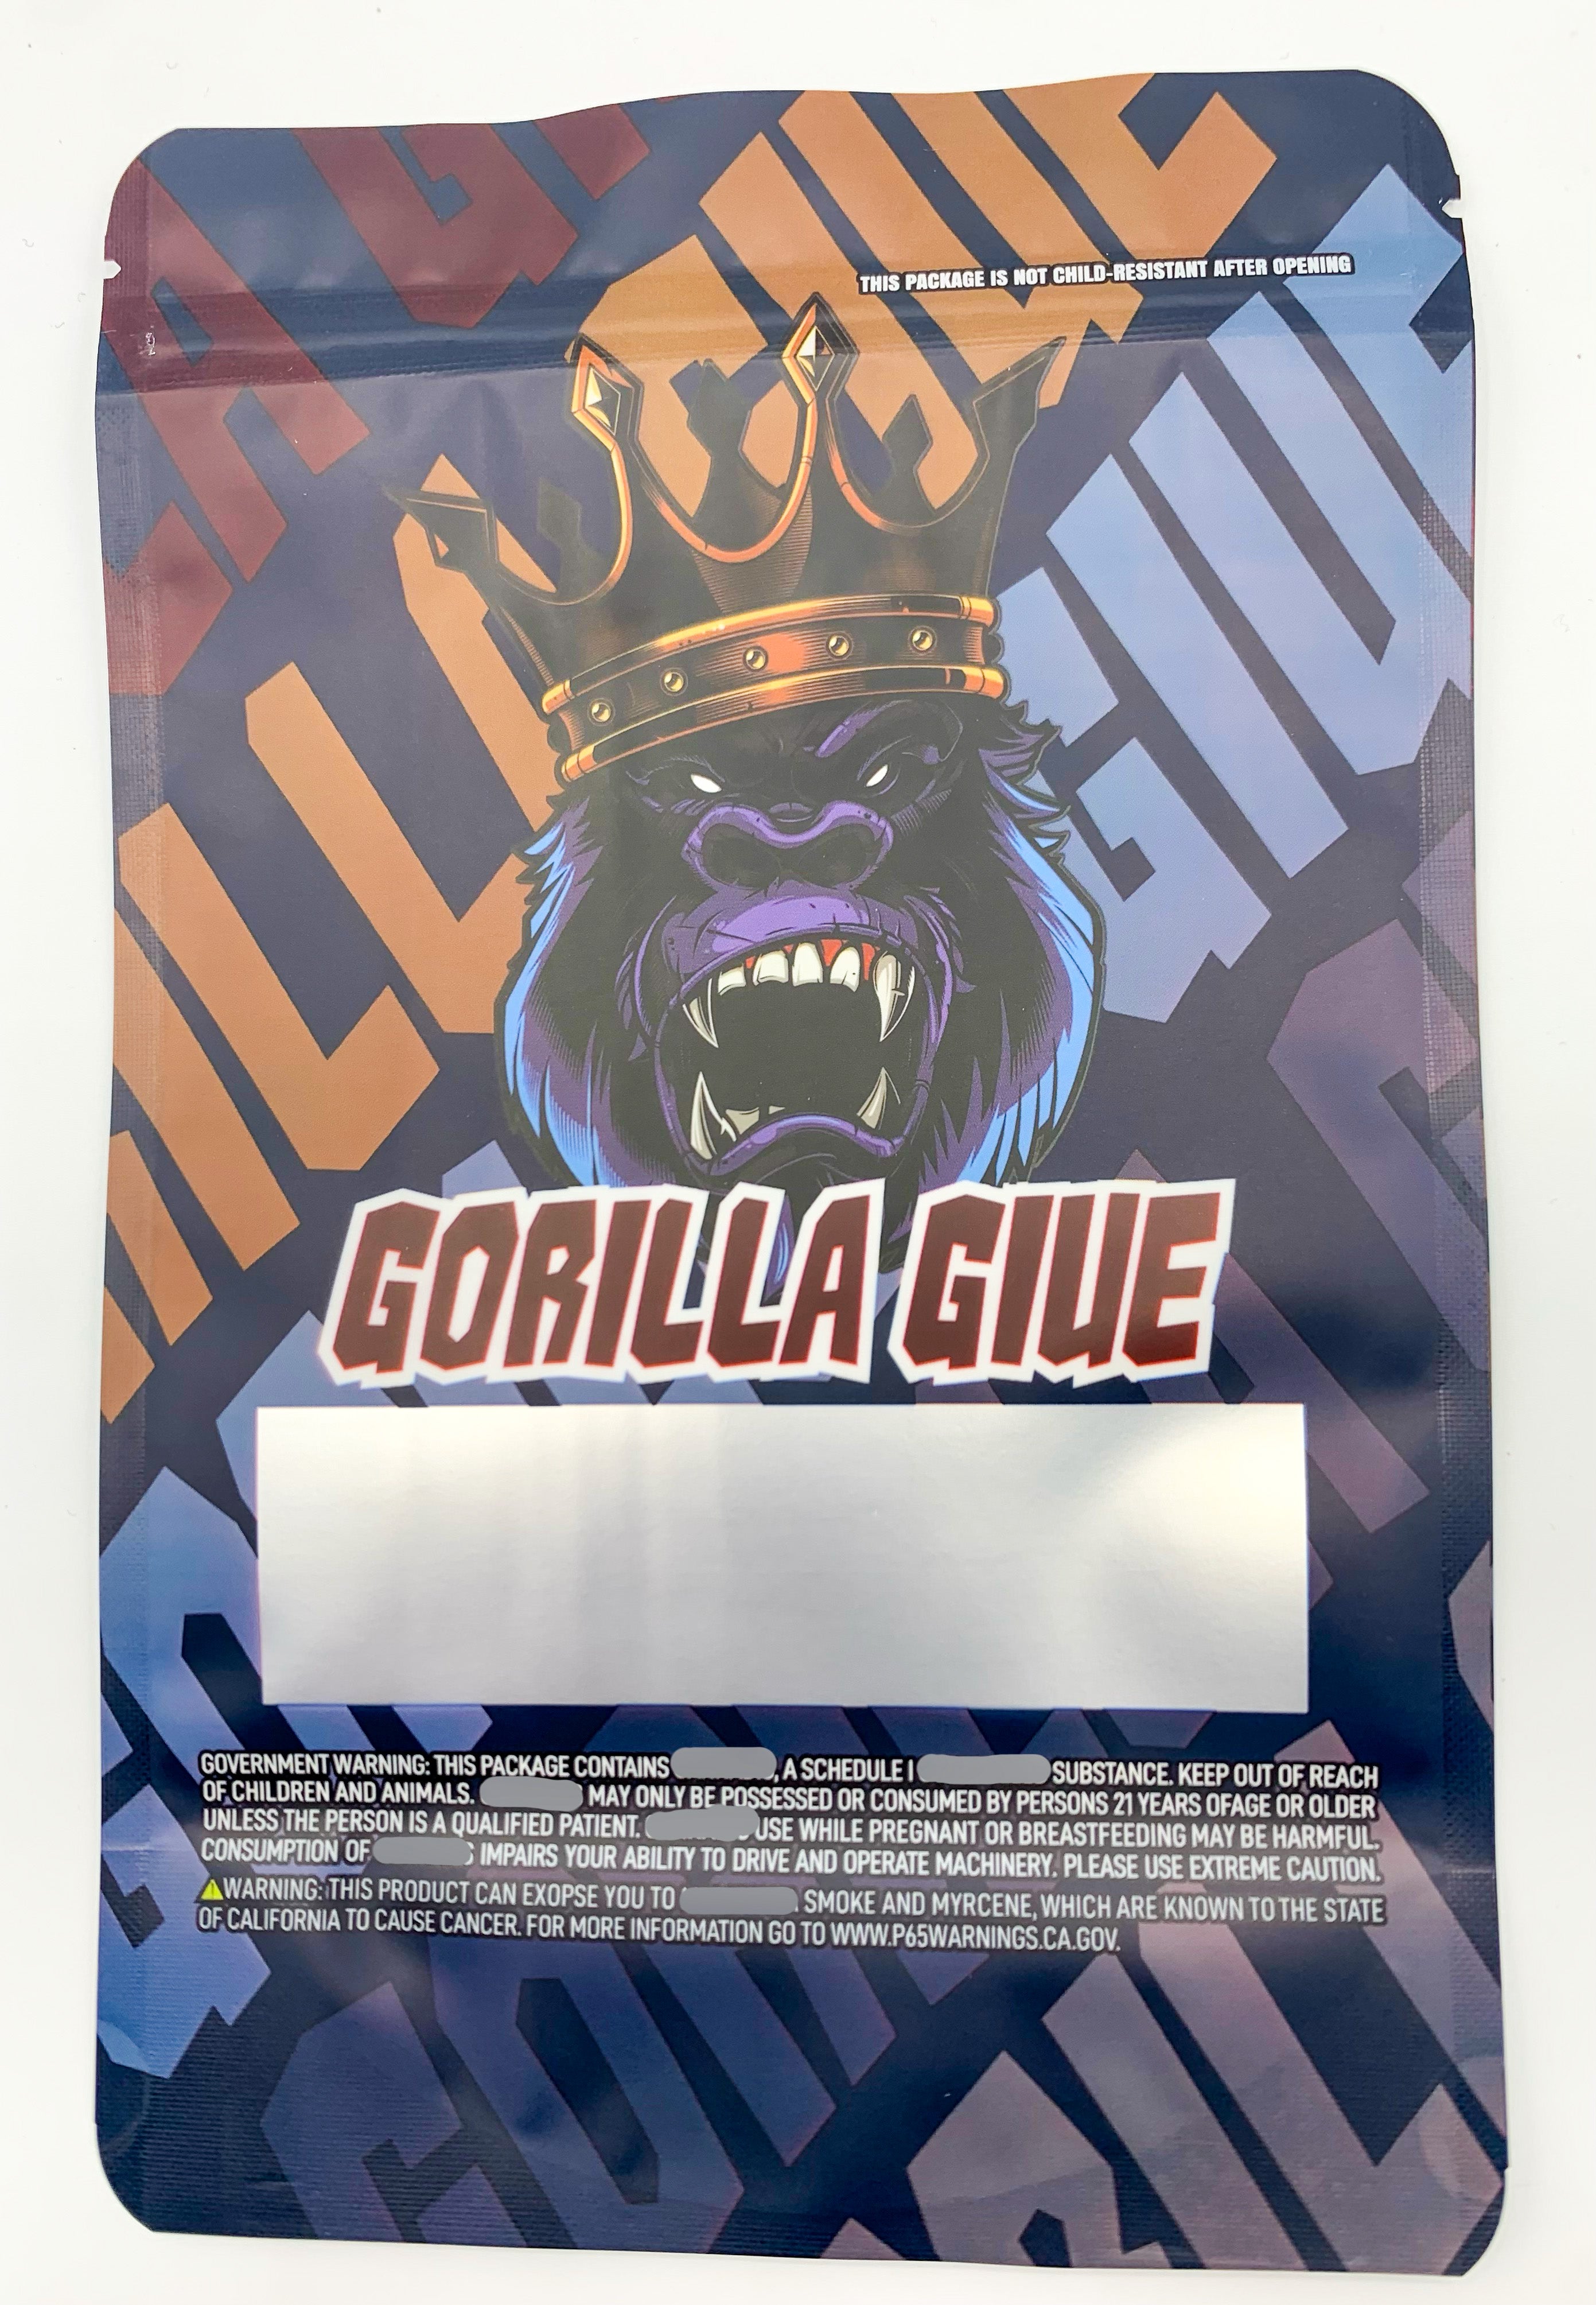 1 oz (28g) Gorilla Glue Mylar bags